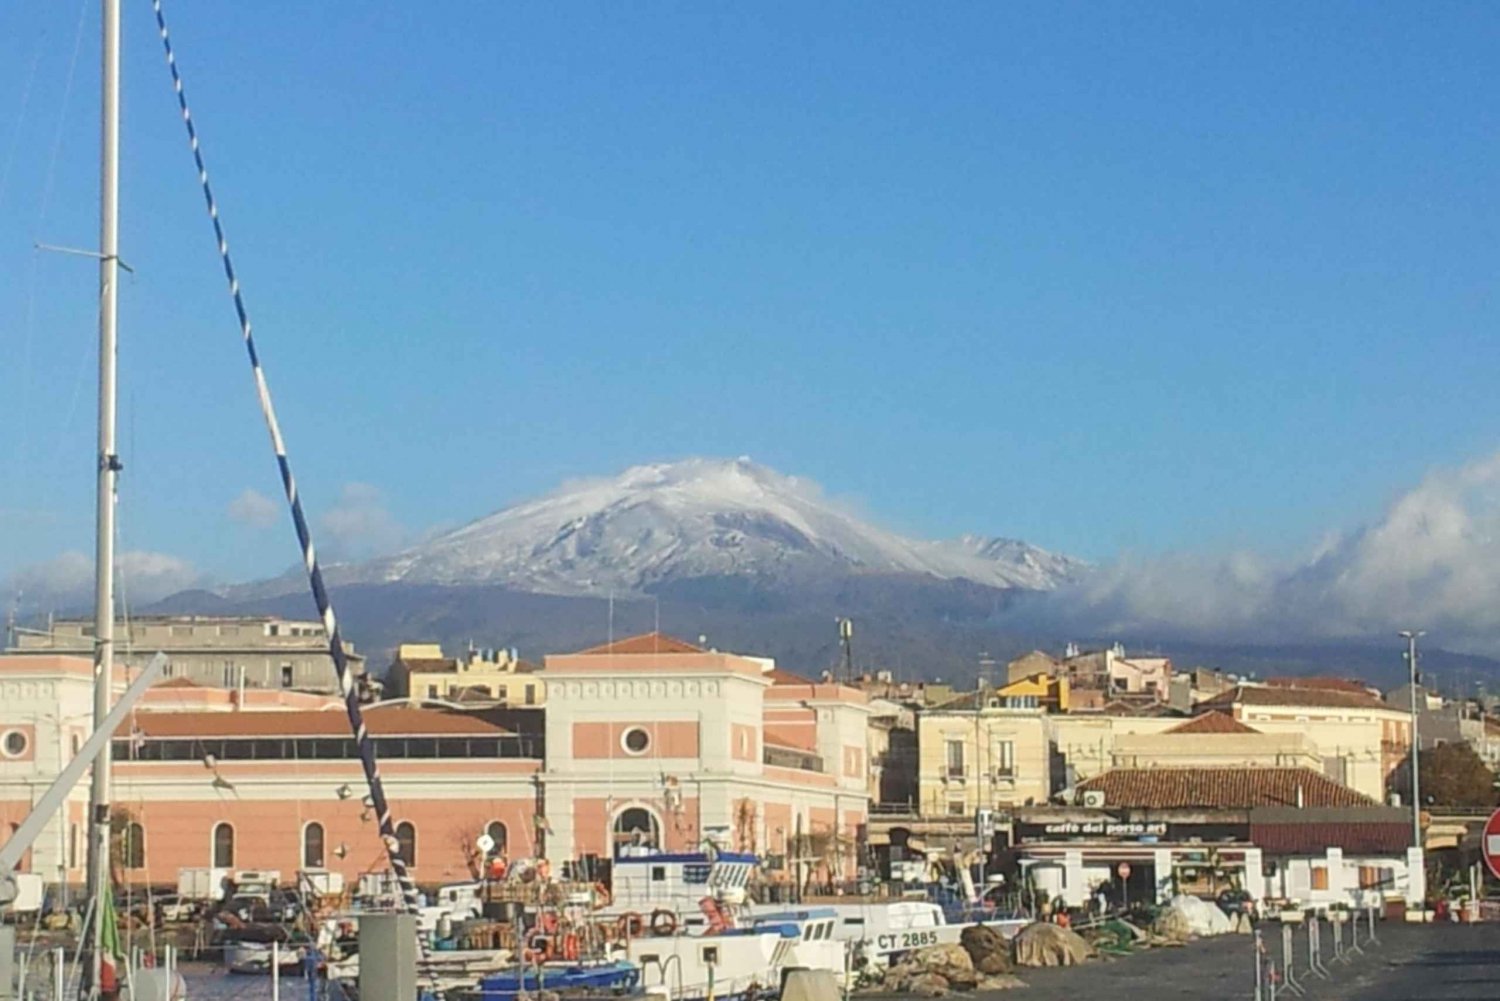 Sicilia: tour de día completo al Etna y a Taormina